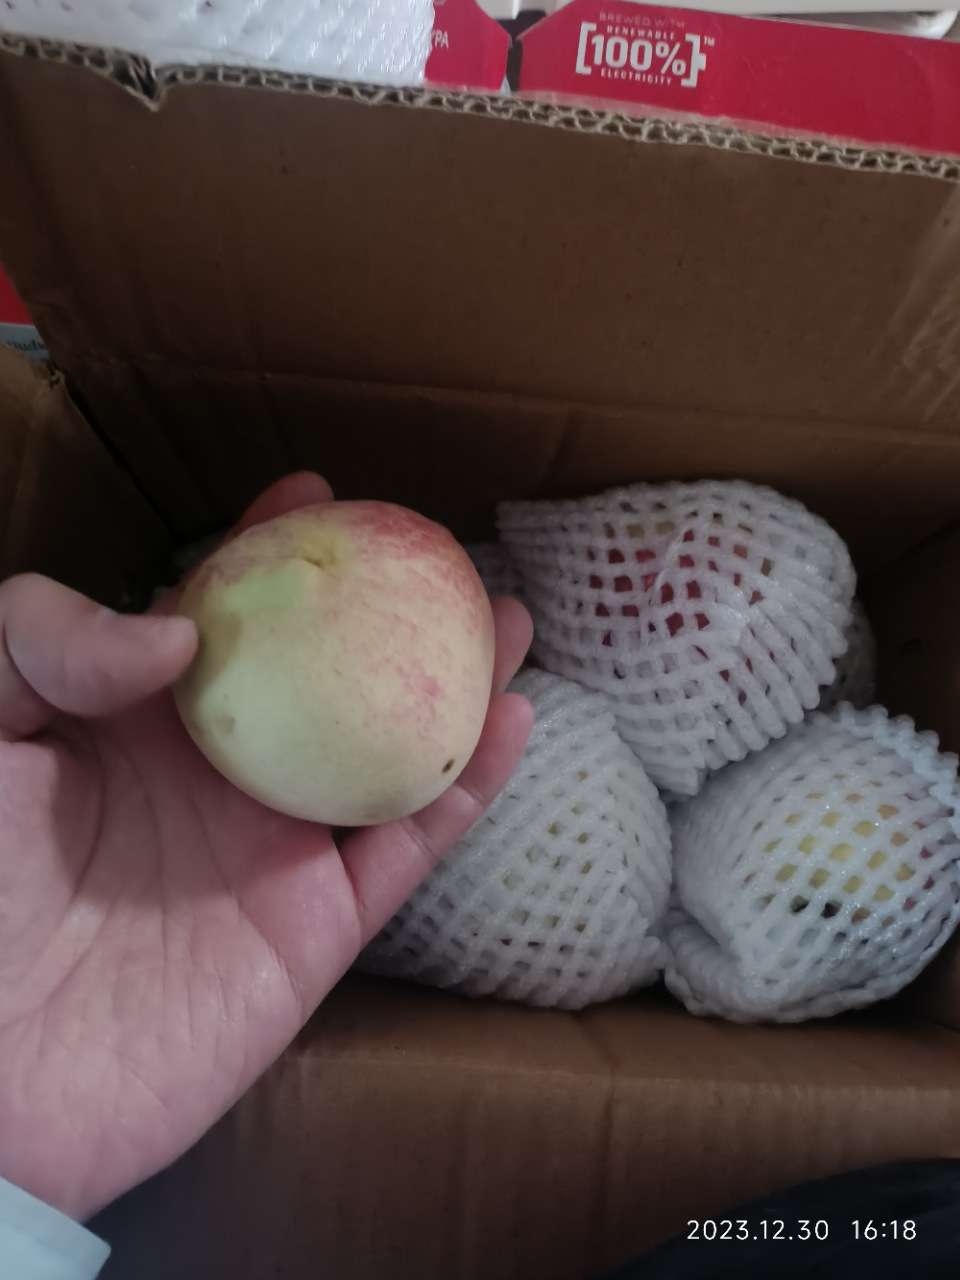 [苏鲜生] 新鲜水蜜桃 蜜桃新鲜水果 净重3斤装 中果 应季现摘脆甜毛桃子 整箱晒单图